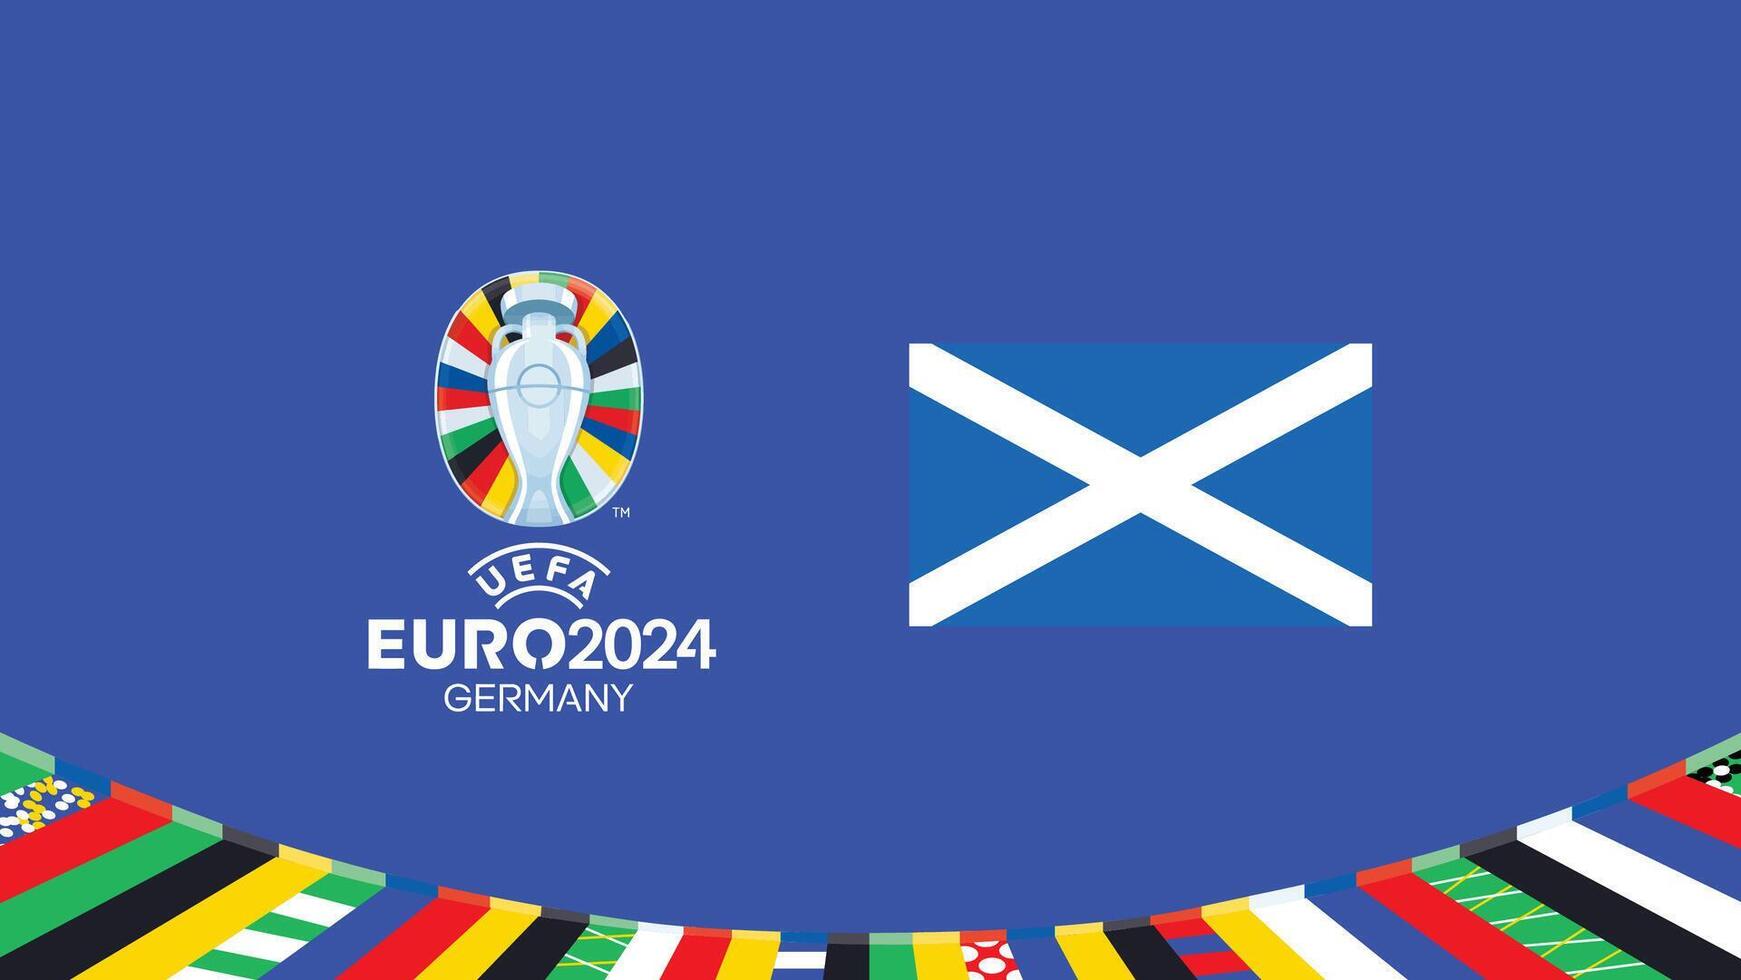 euro 2024 Écosse drapeau emblème équipes conception avec officiel symbole logo abstrait des pays européen Football illustration vecteur